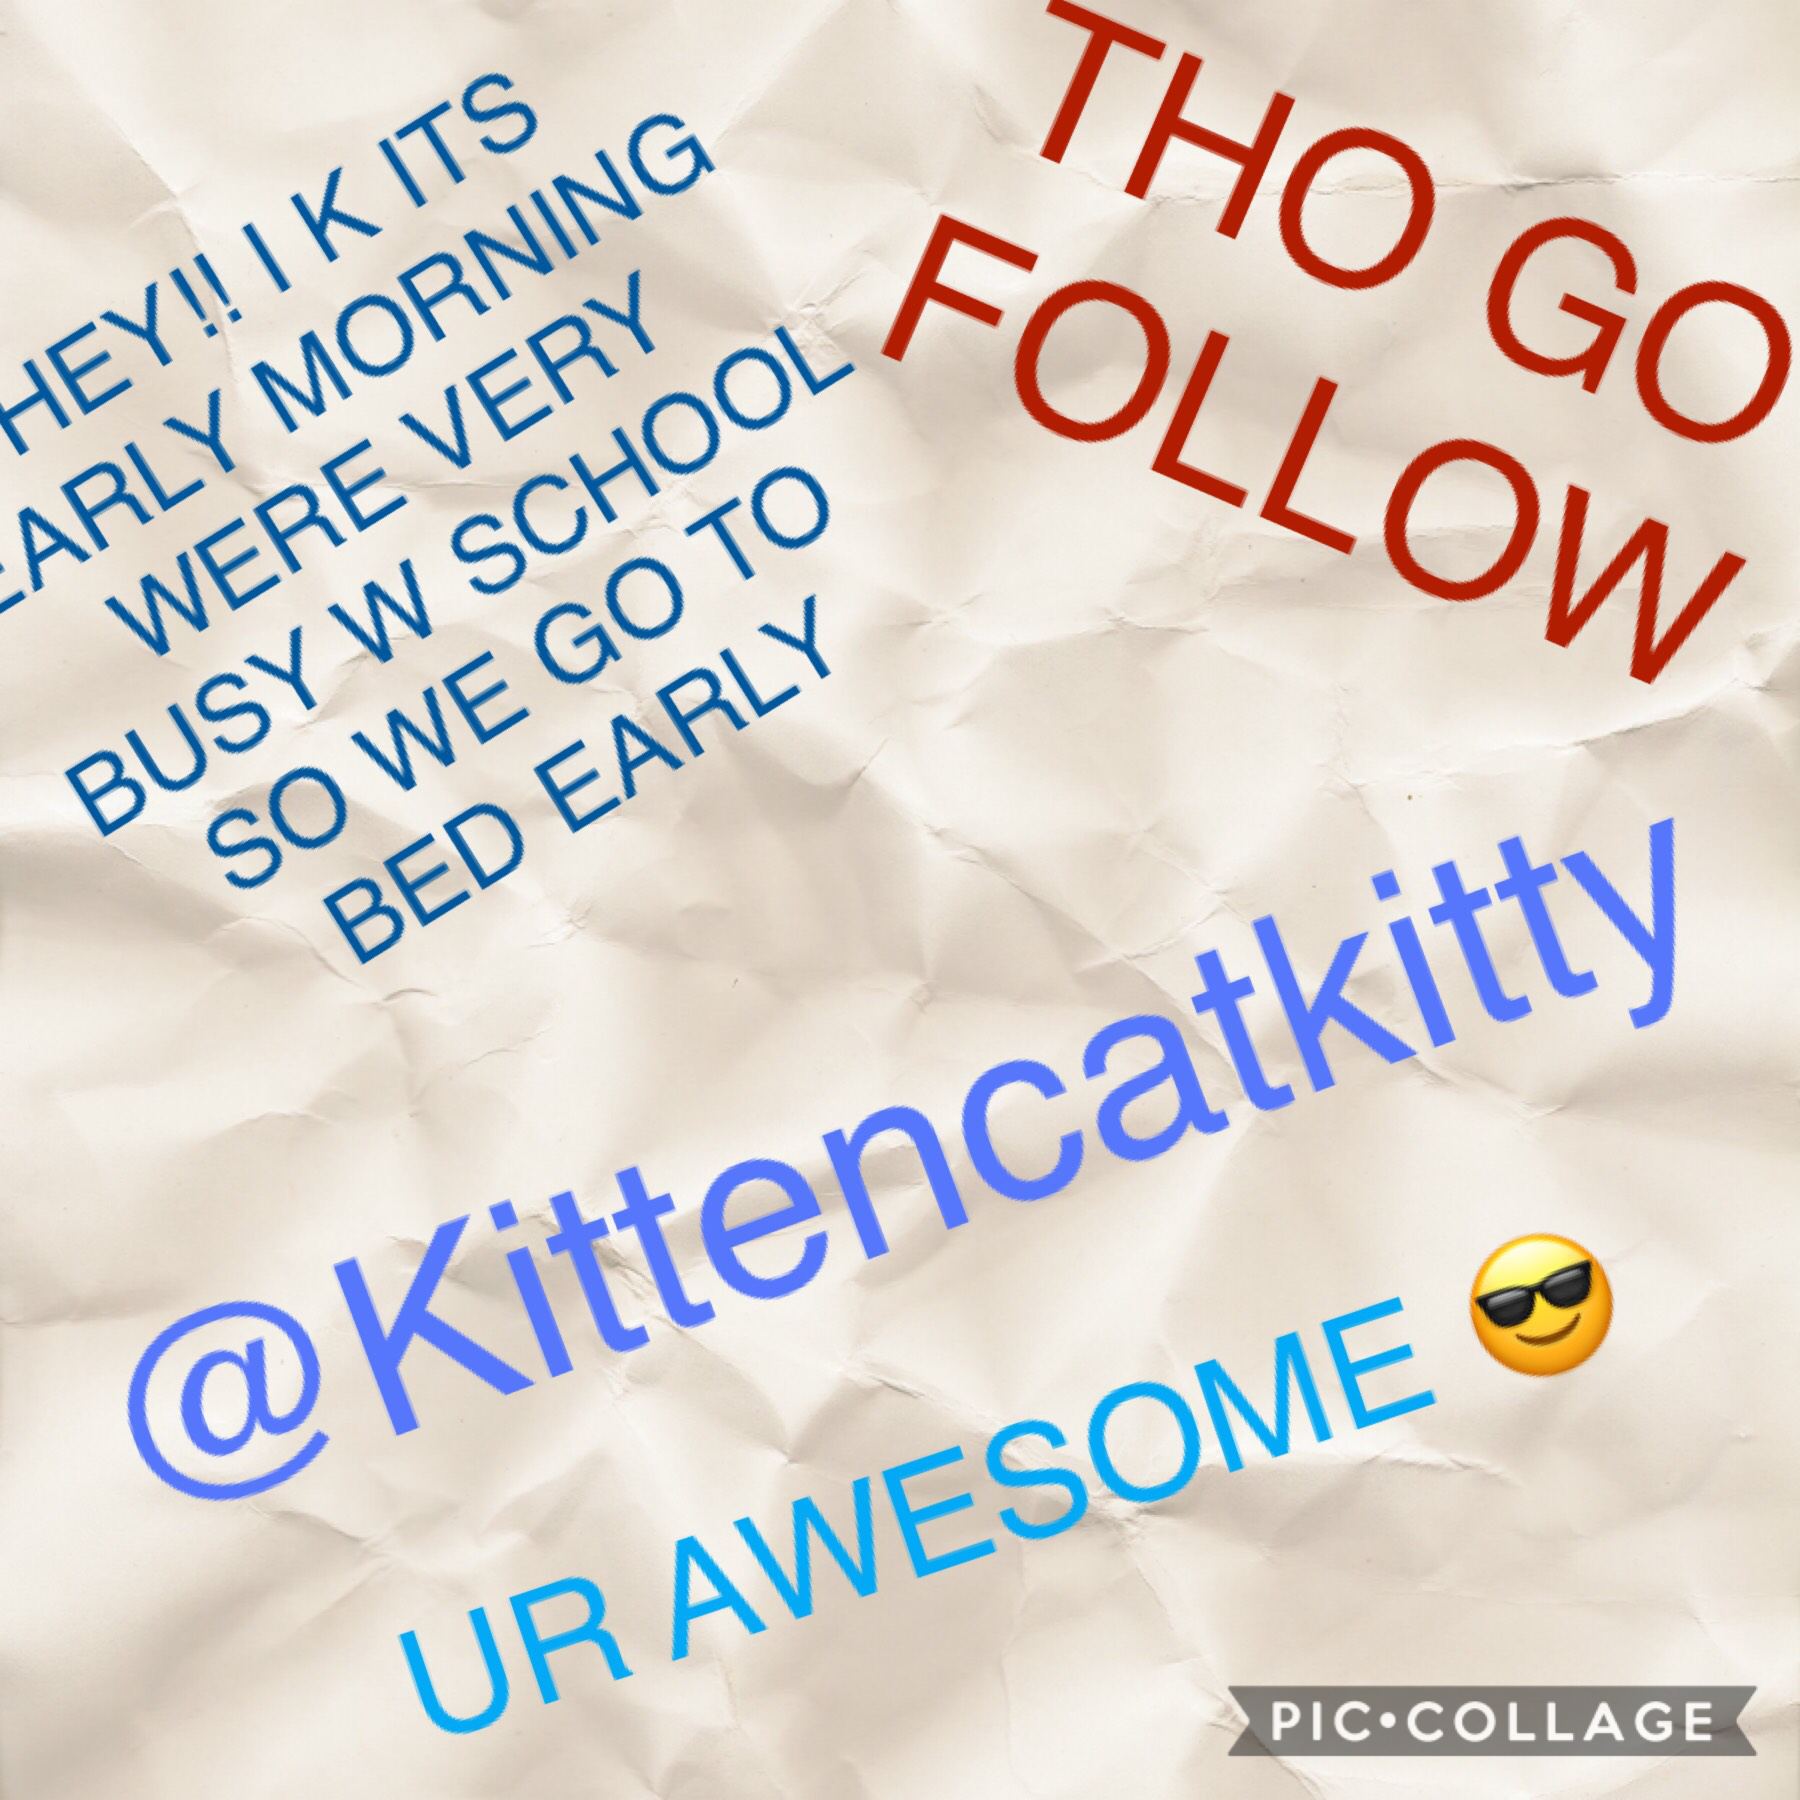 Go follow@kittencatkitty